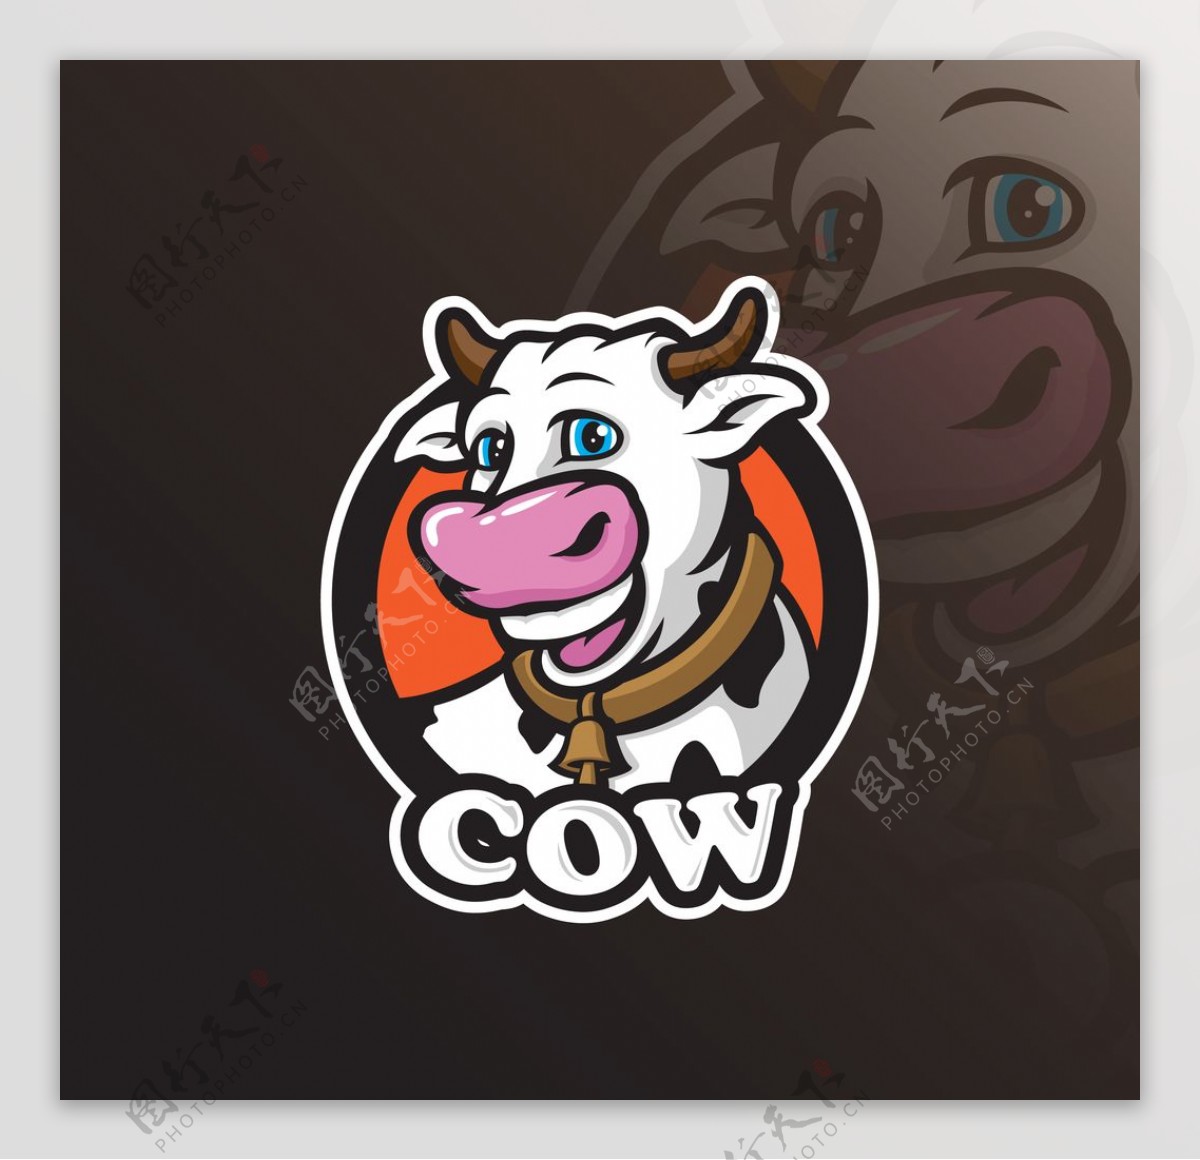 牛头标志